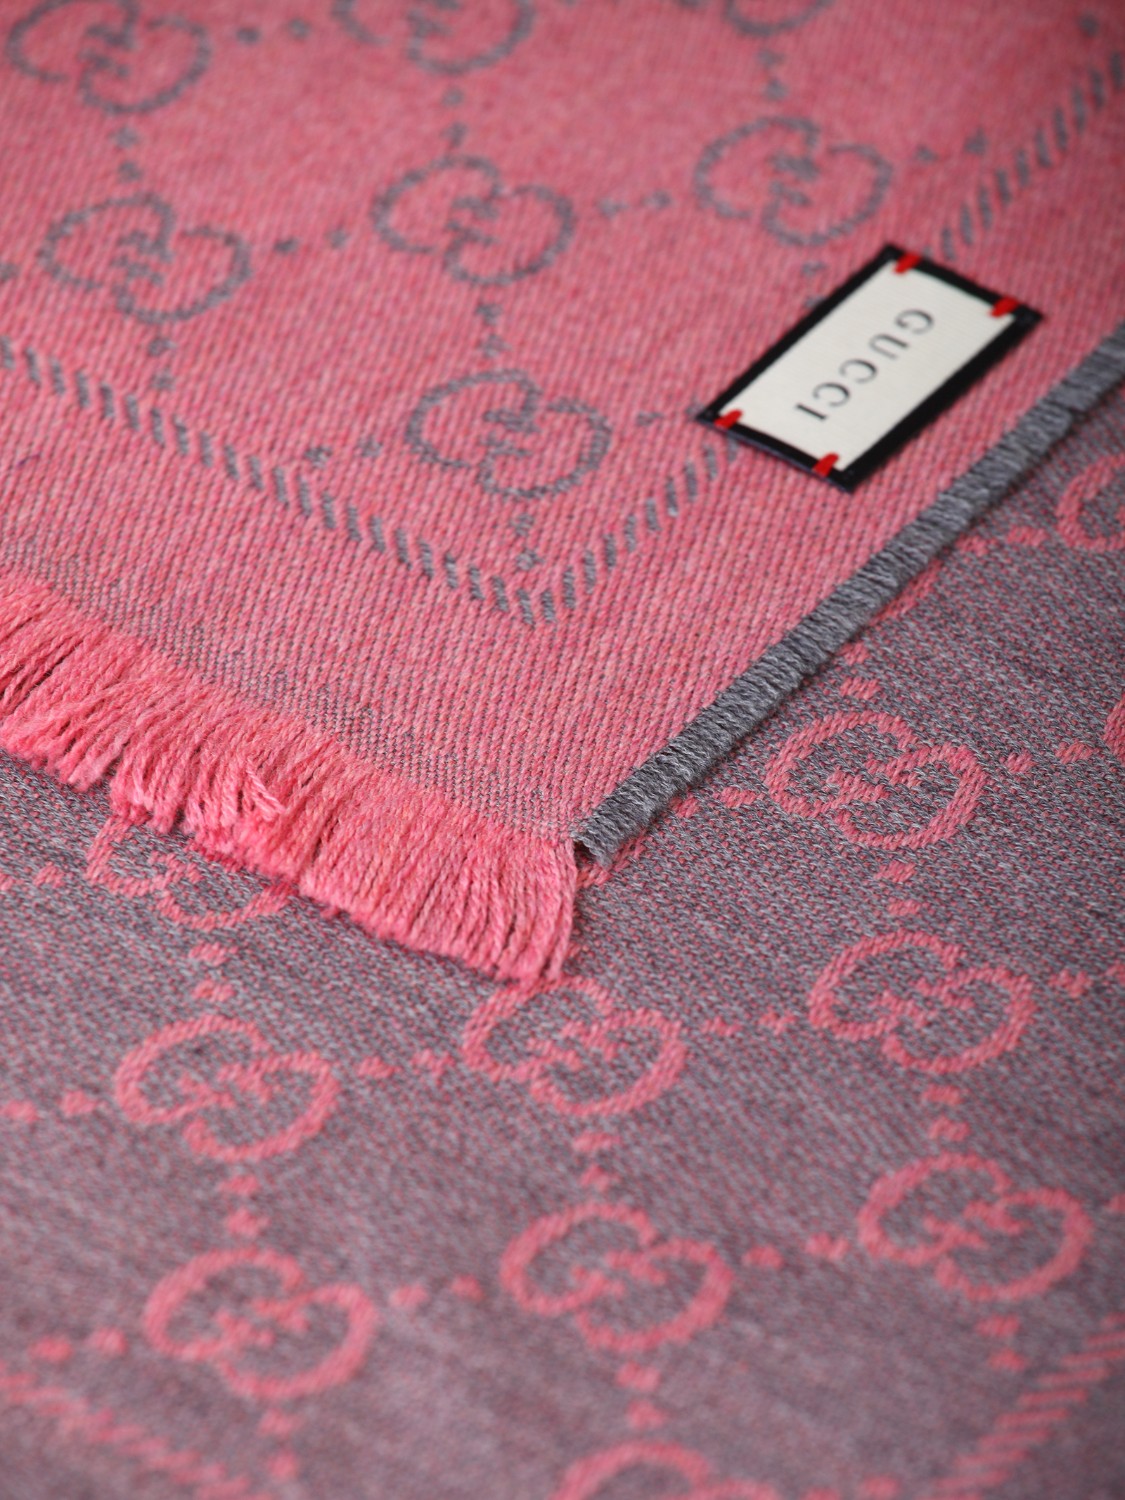 shop GUCCI  Sciarpa: Gucci sciarpa in lana grigia con motivo GG jacquard rosa.
Bordi sfrangiati.
Dimensioni: L48 cm x L180 cm.
Composizione: 100% lana.
Made in Italy.. 133483 3G200-1272 number 4069484